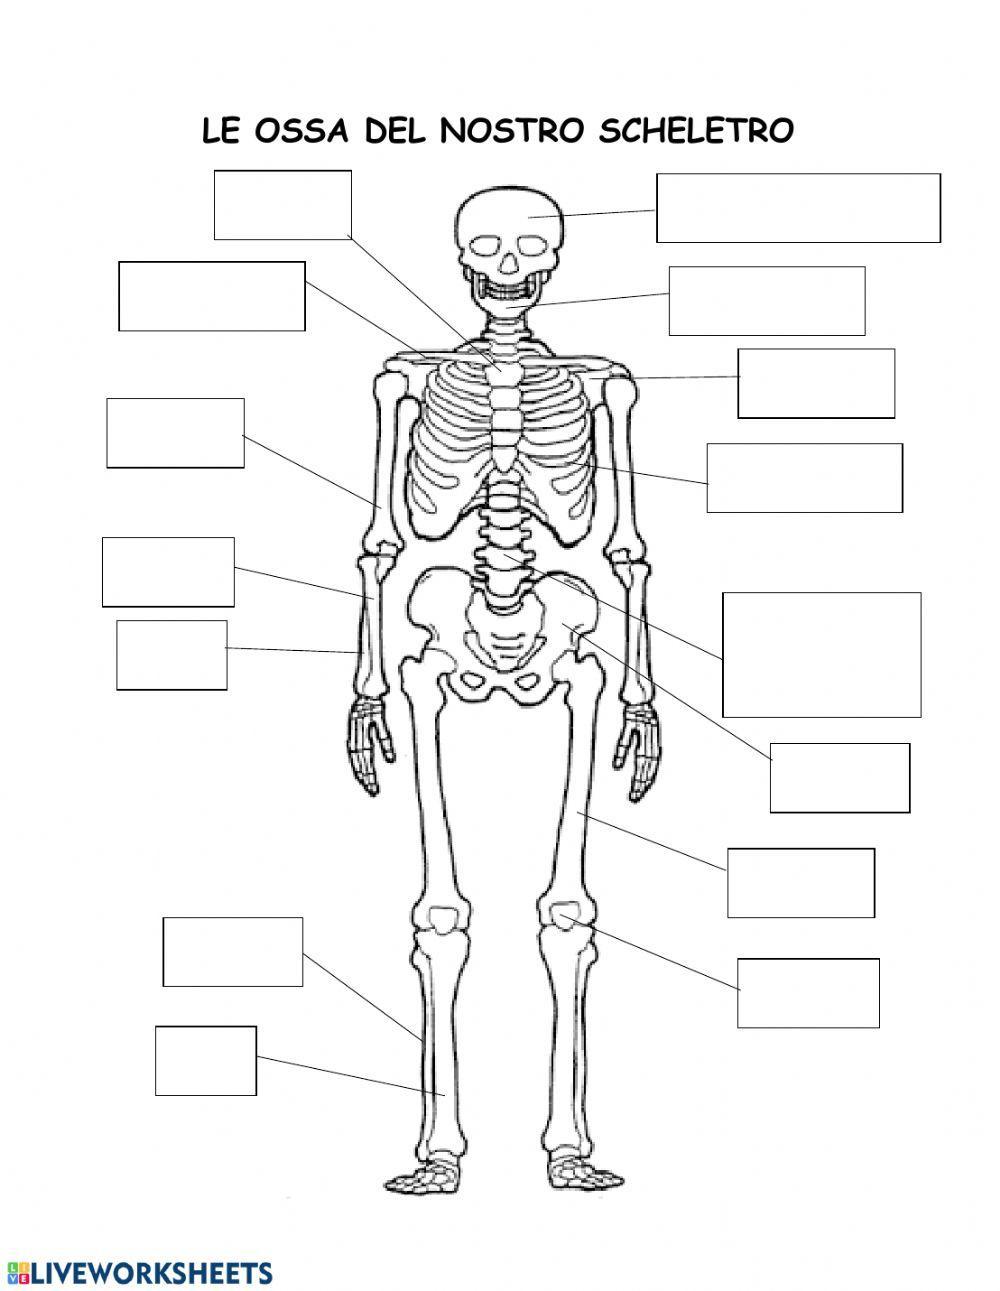 Ossa dello scheletro